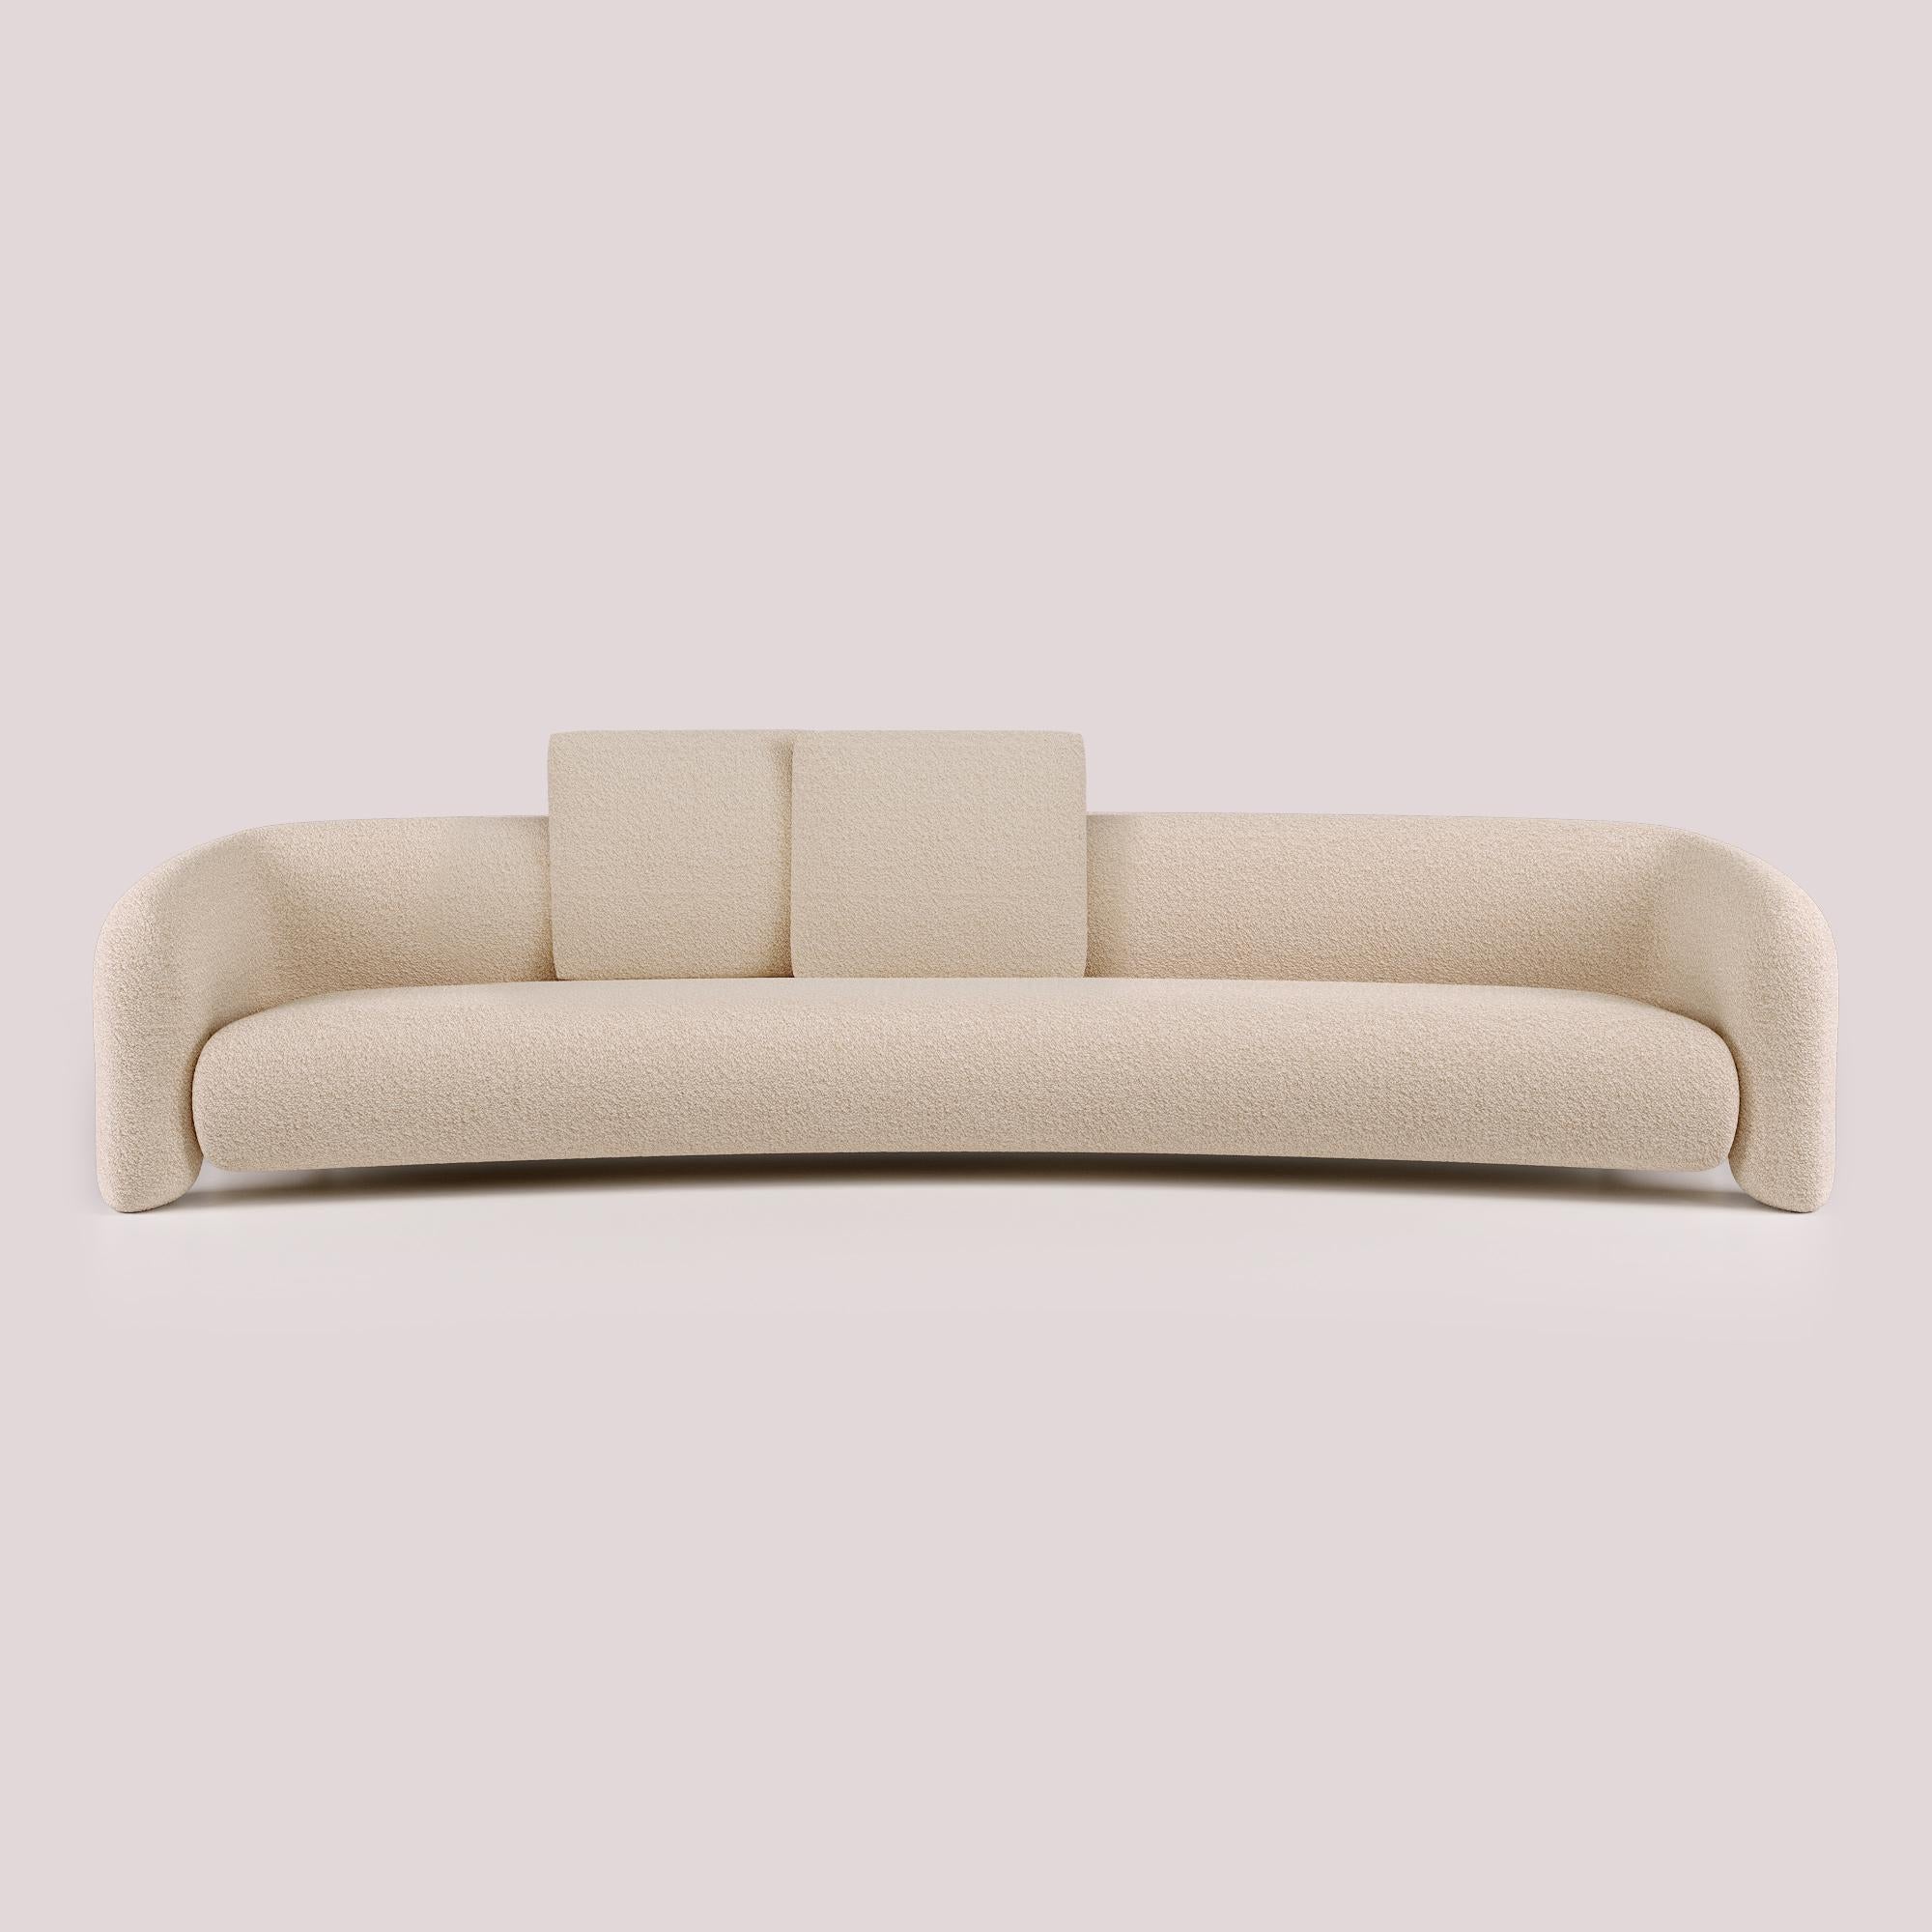 Avec son design contemporain, cette version du Bold Sofa Curved introduit de nouvelles dimensions de confort, offrant un espace élargi pour une relaxation ultime. Les lignes fluides et les courbes organiques, combinées à l'ouverture des bras,